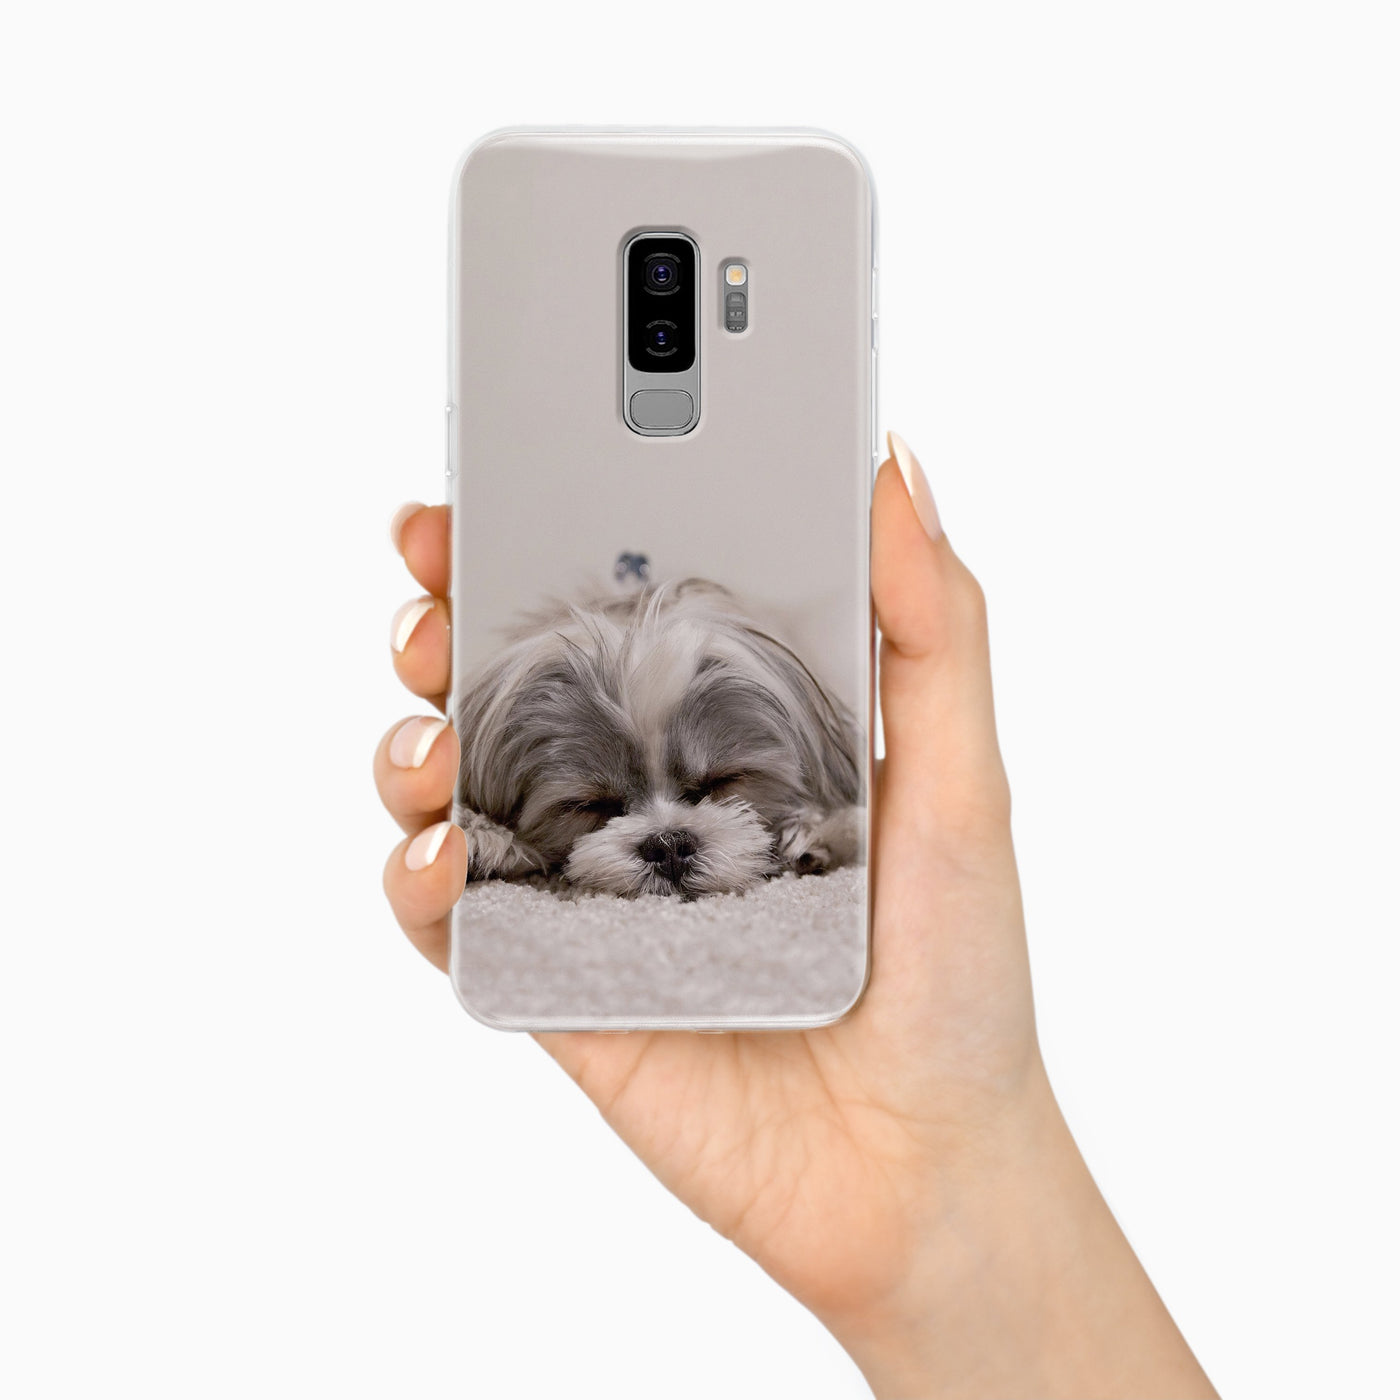 Samsung Galaxy S9 Plus Handyhülle selbst gestalten